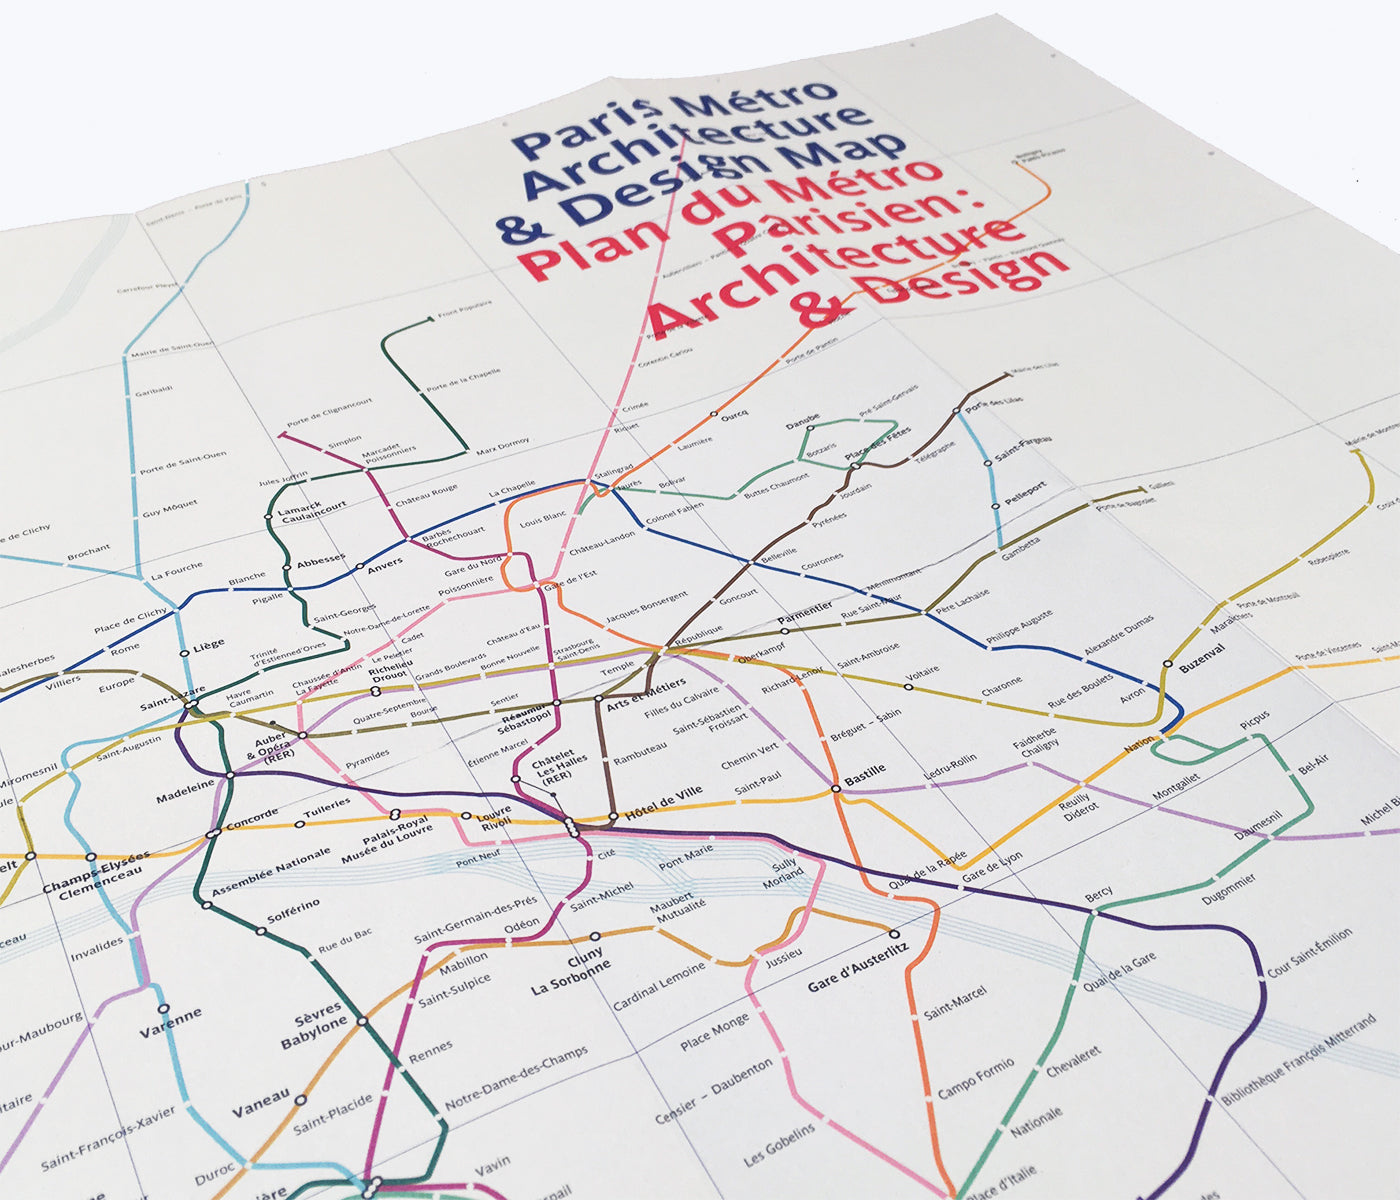 Paris Metro Architecture & Design Map / Plan du Métro Parisien : Architecture & Design